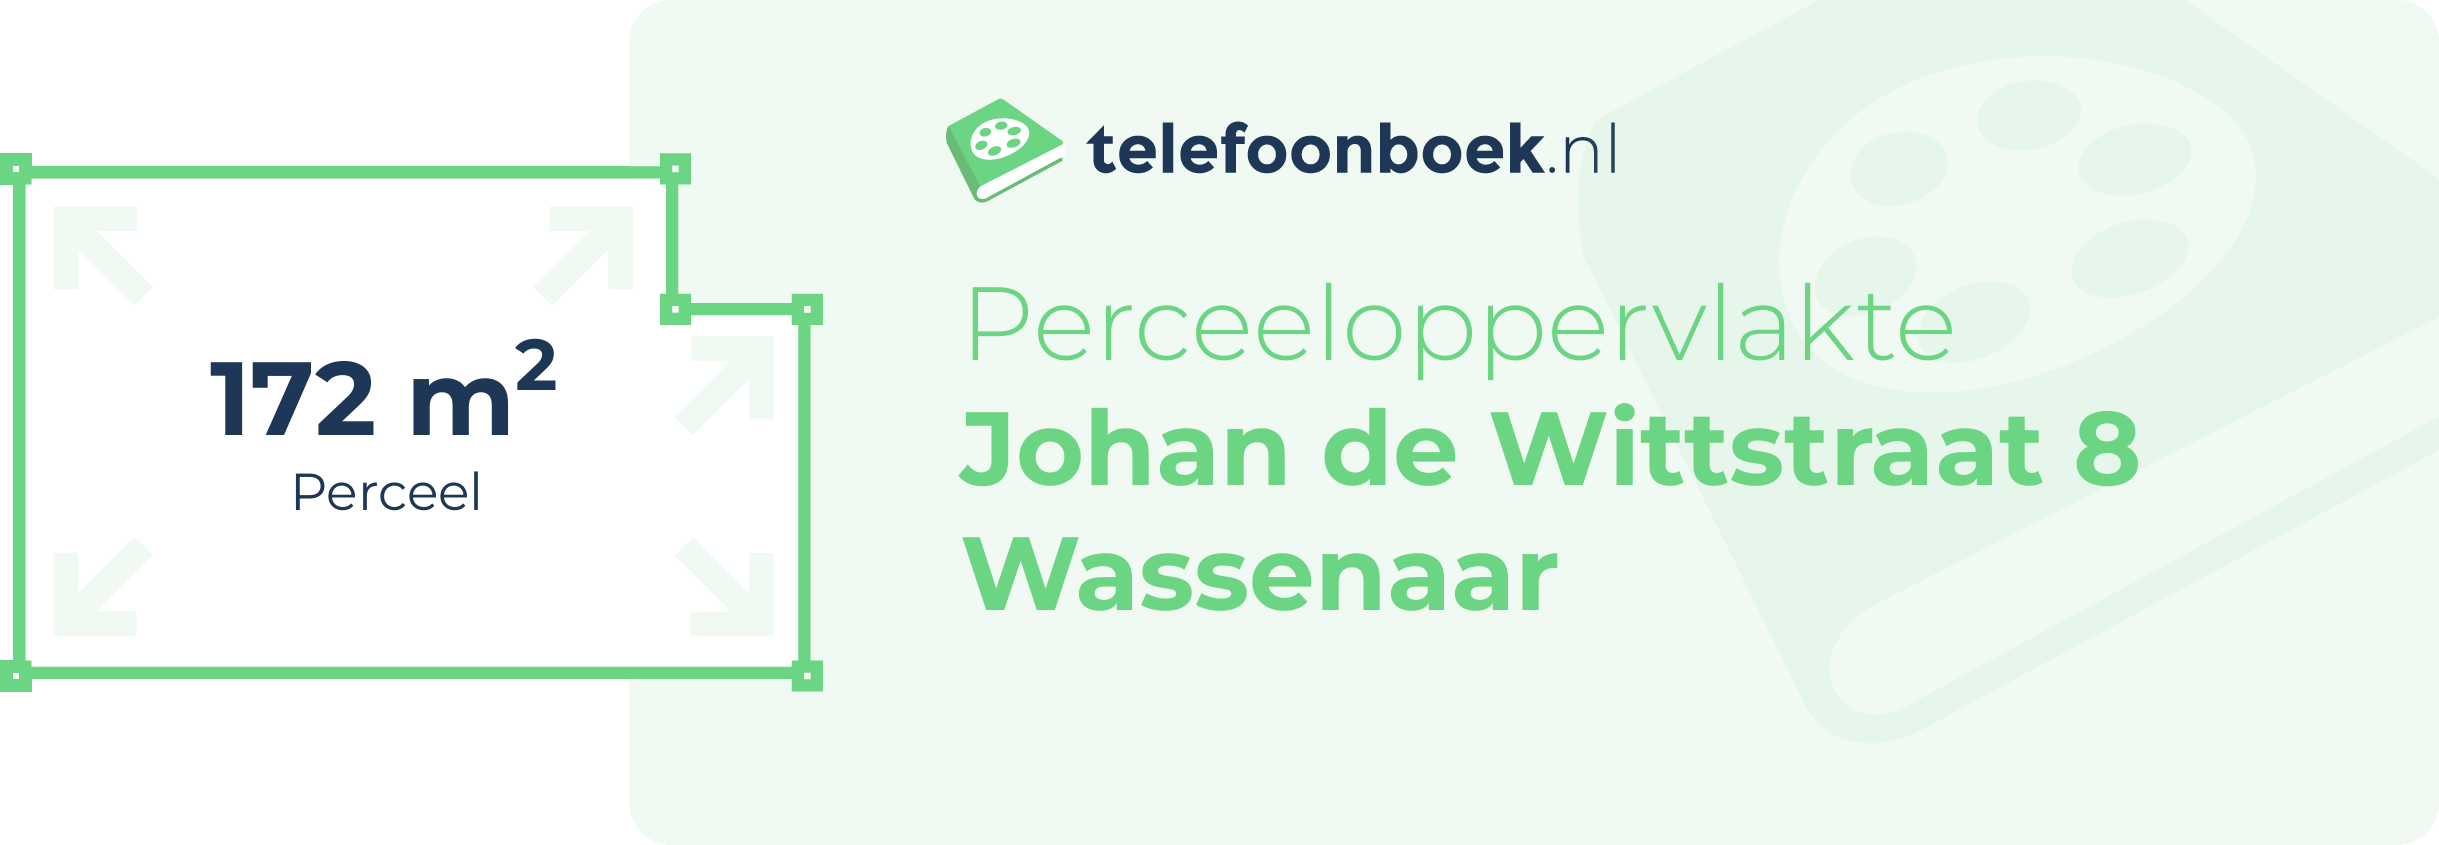 Perceeloppervlakte Johan De Wittstraat 8 Wassenaar